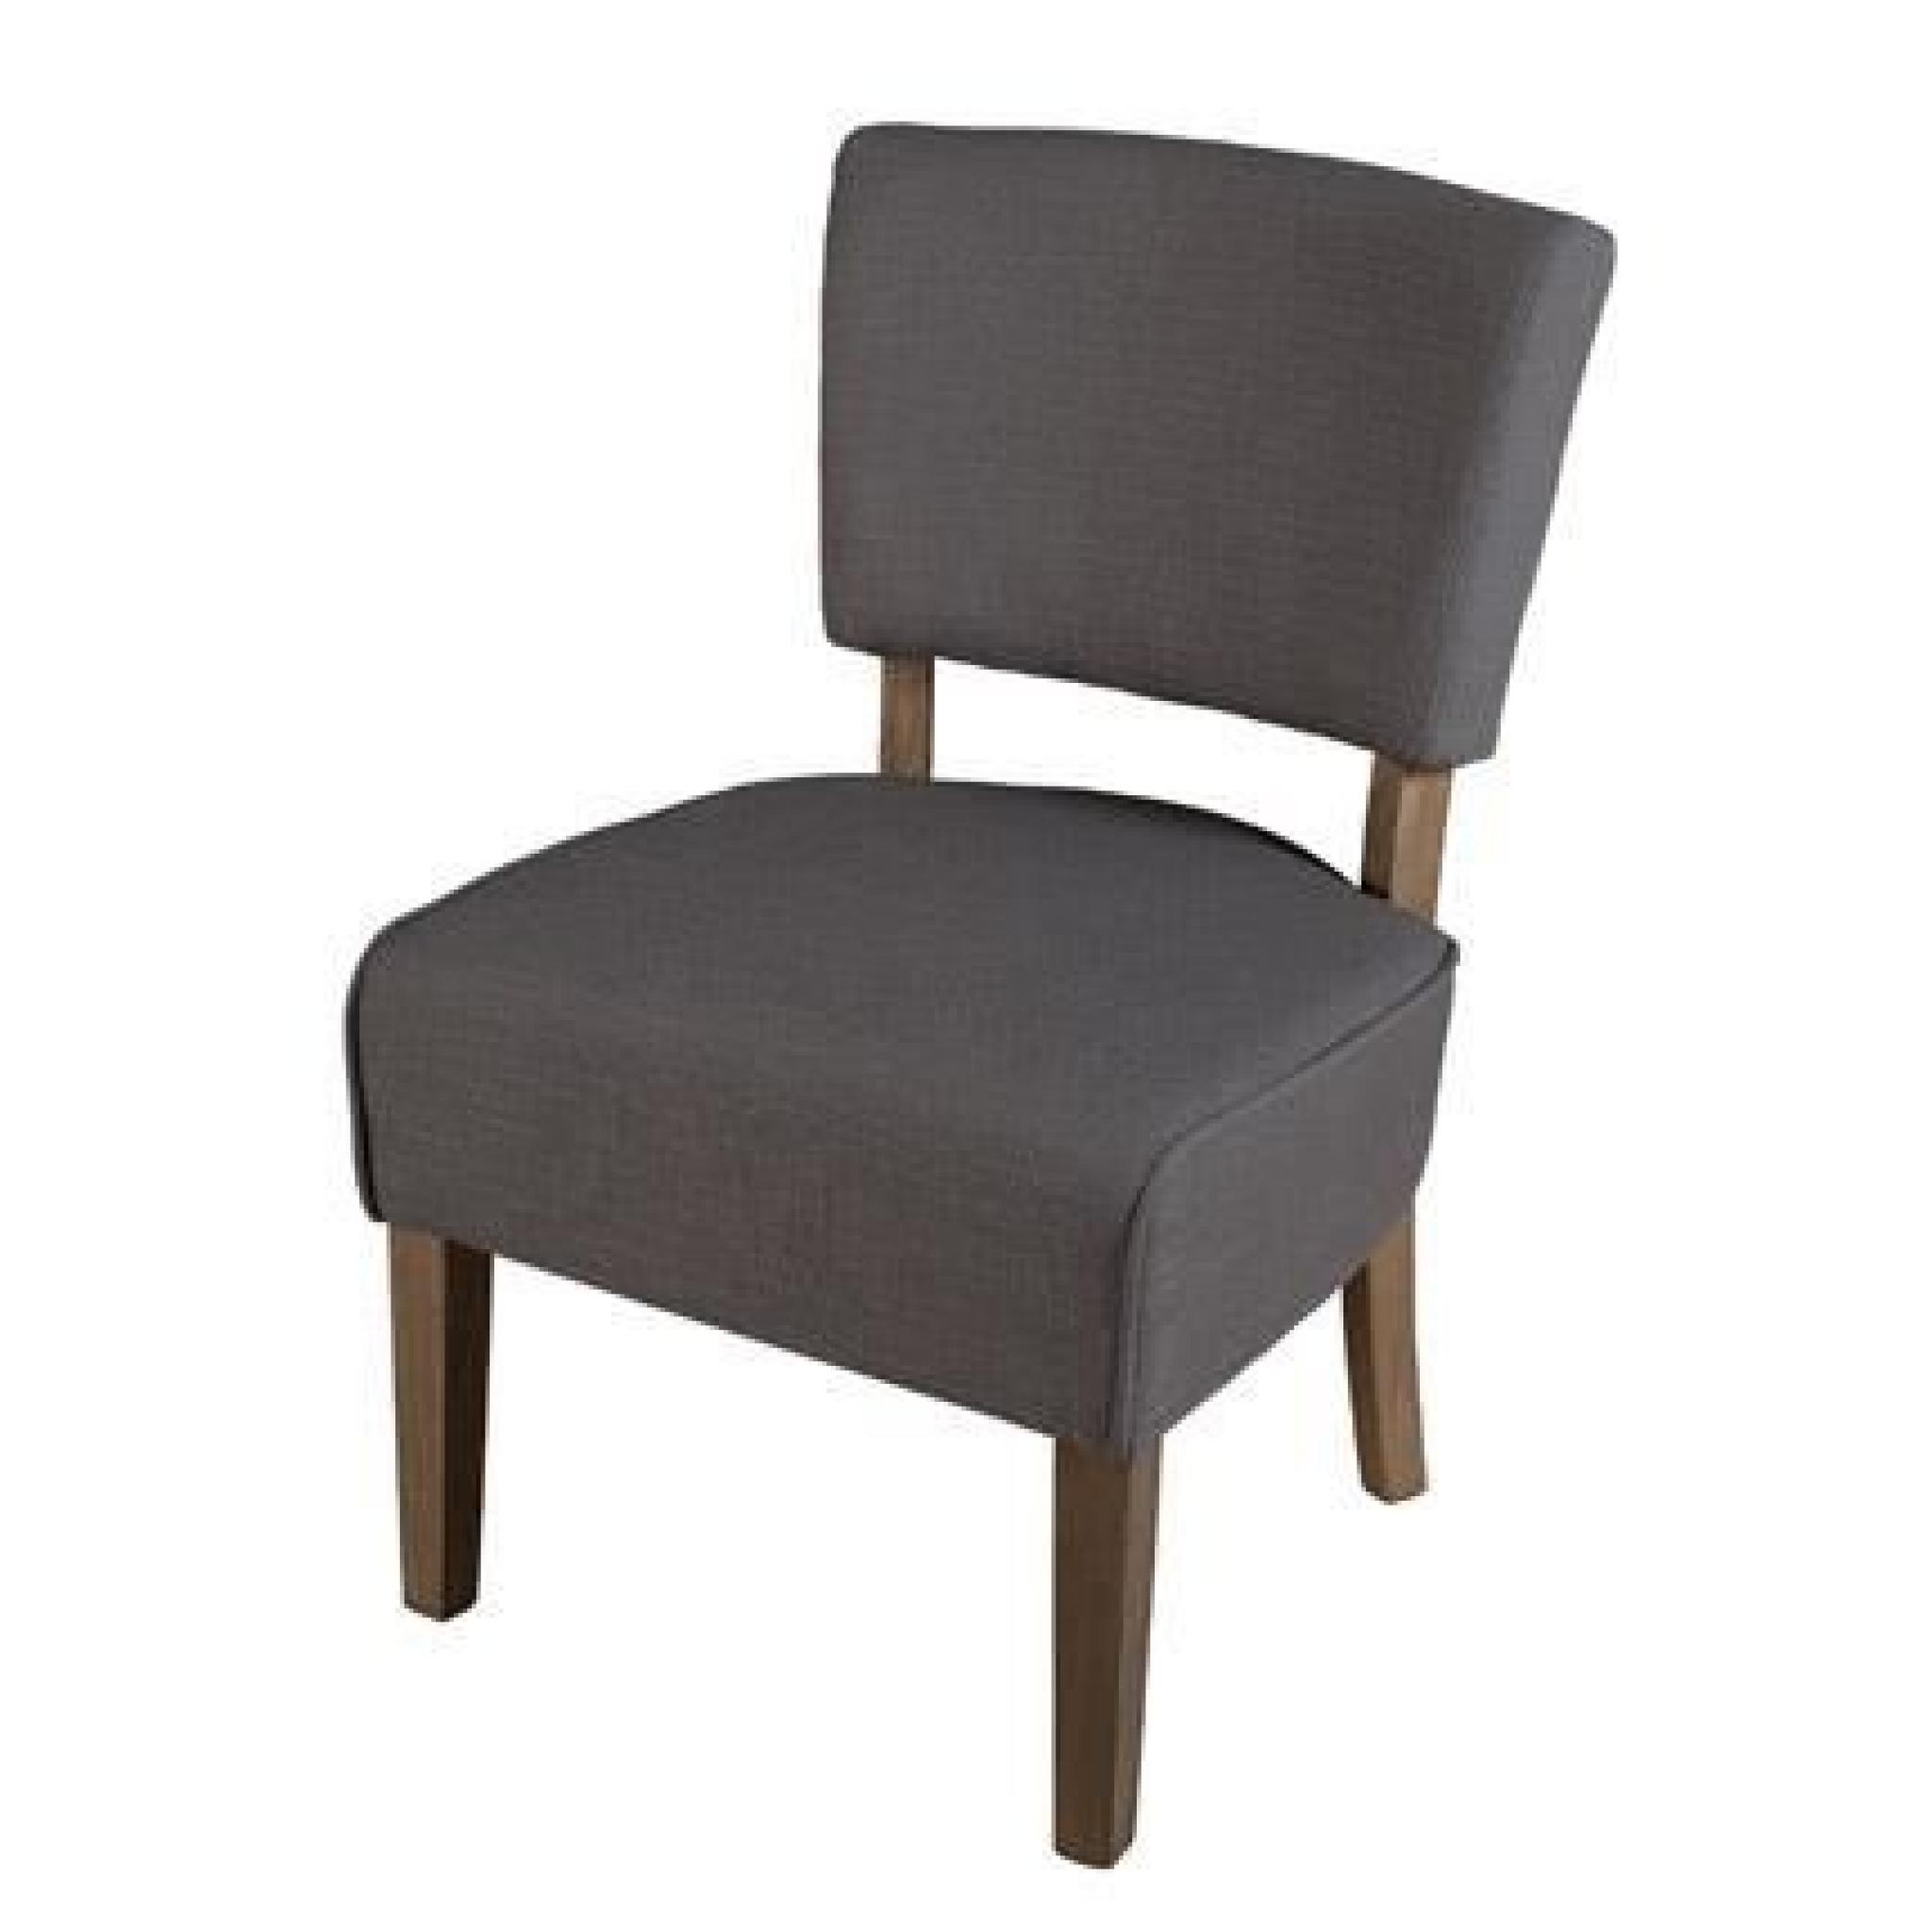 Chaise basse en tissu - coloris gris